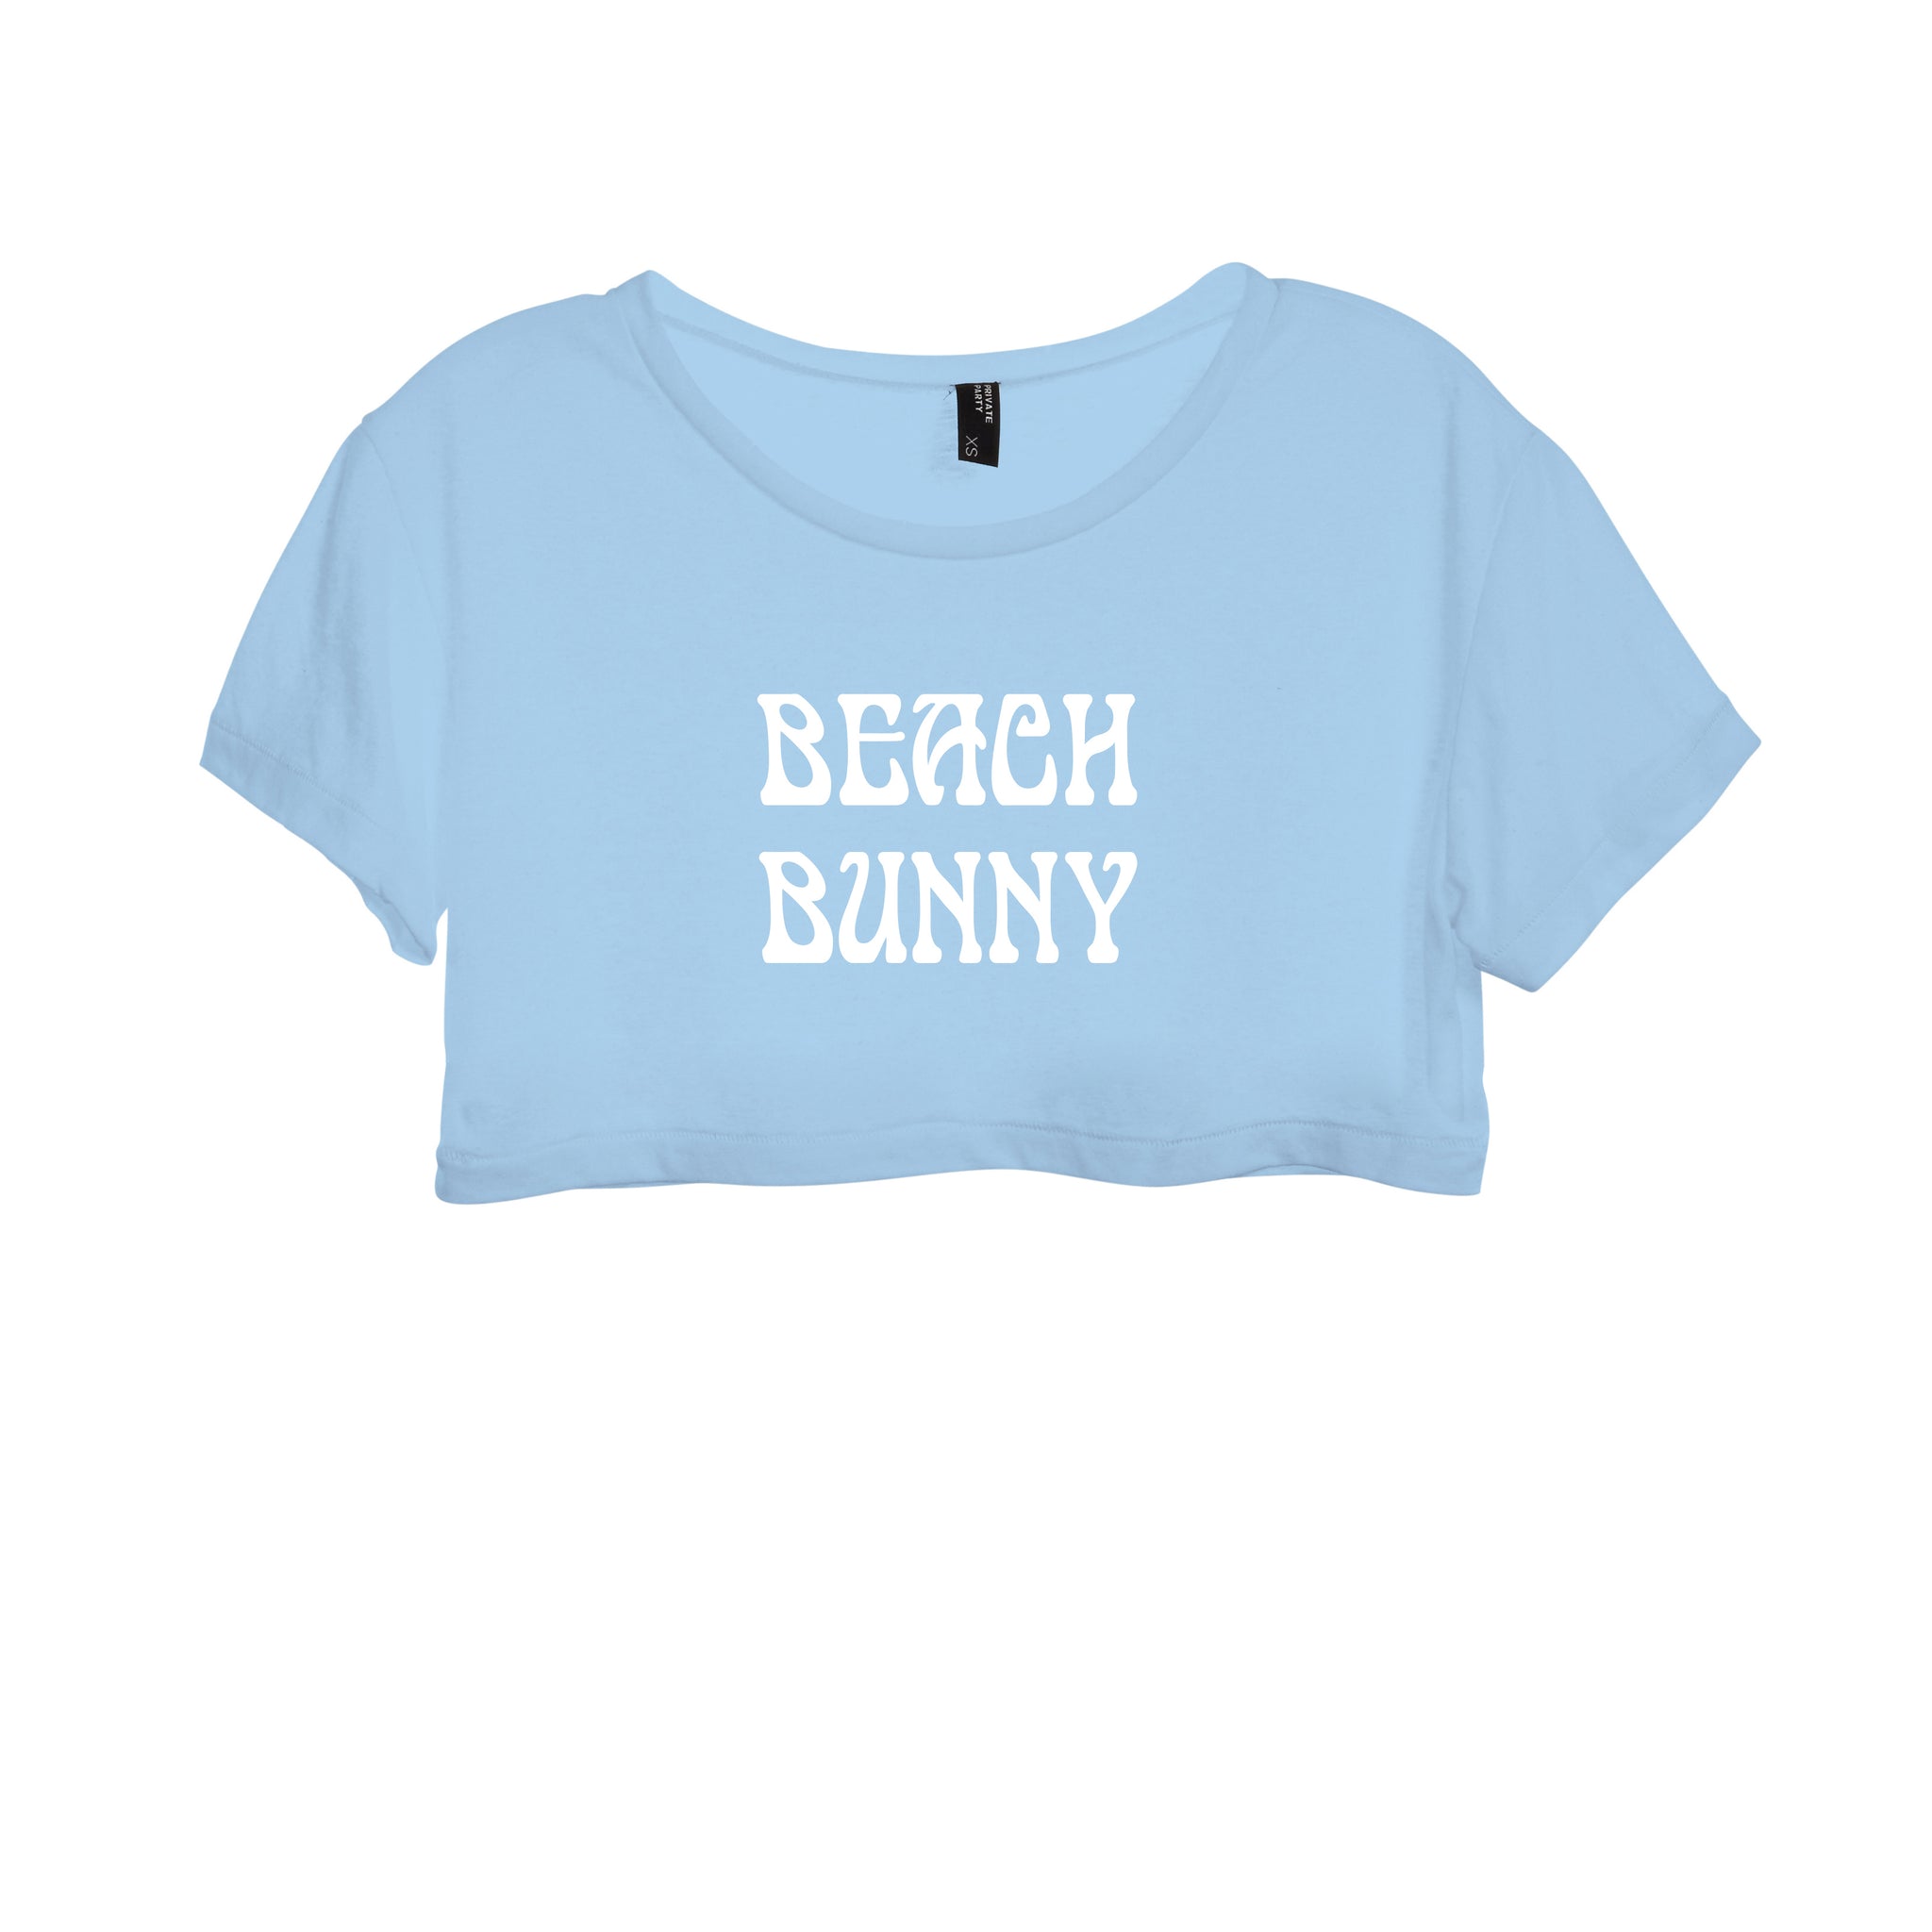 BEACH BUNNY [WOMEN'S CROP DISTRESSED BABY TEE]